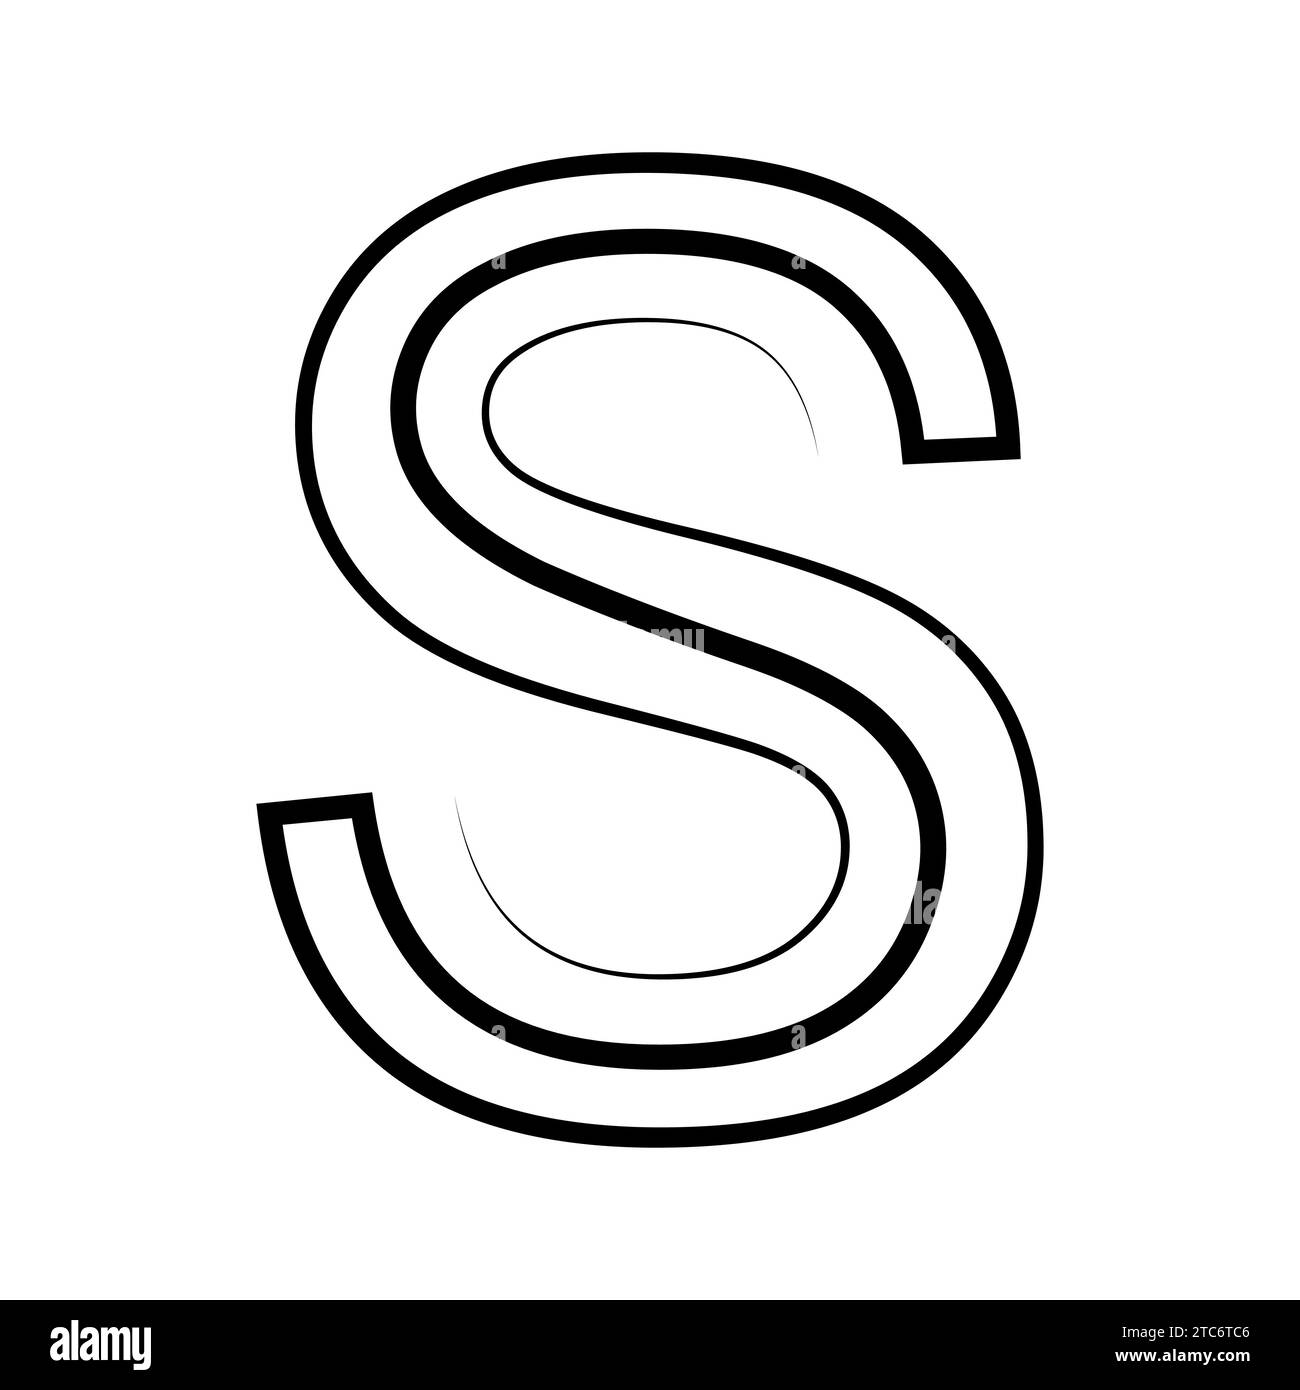 S logo studio letter s design icon logotype technology font Stock Vector